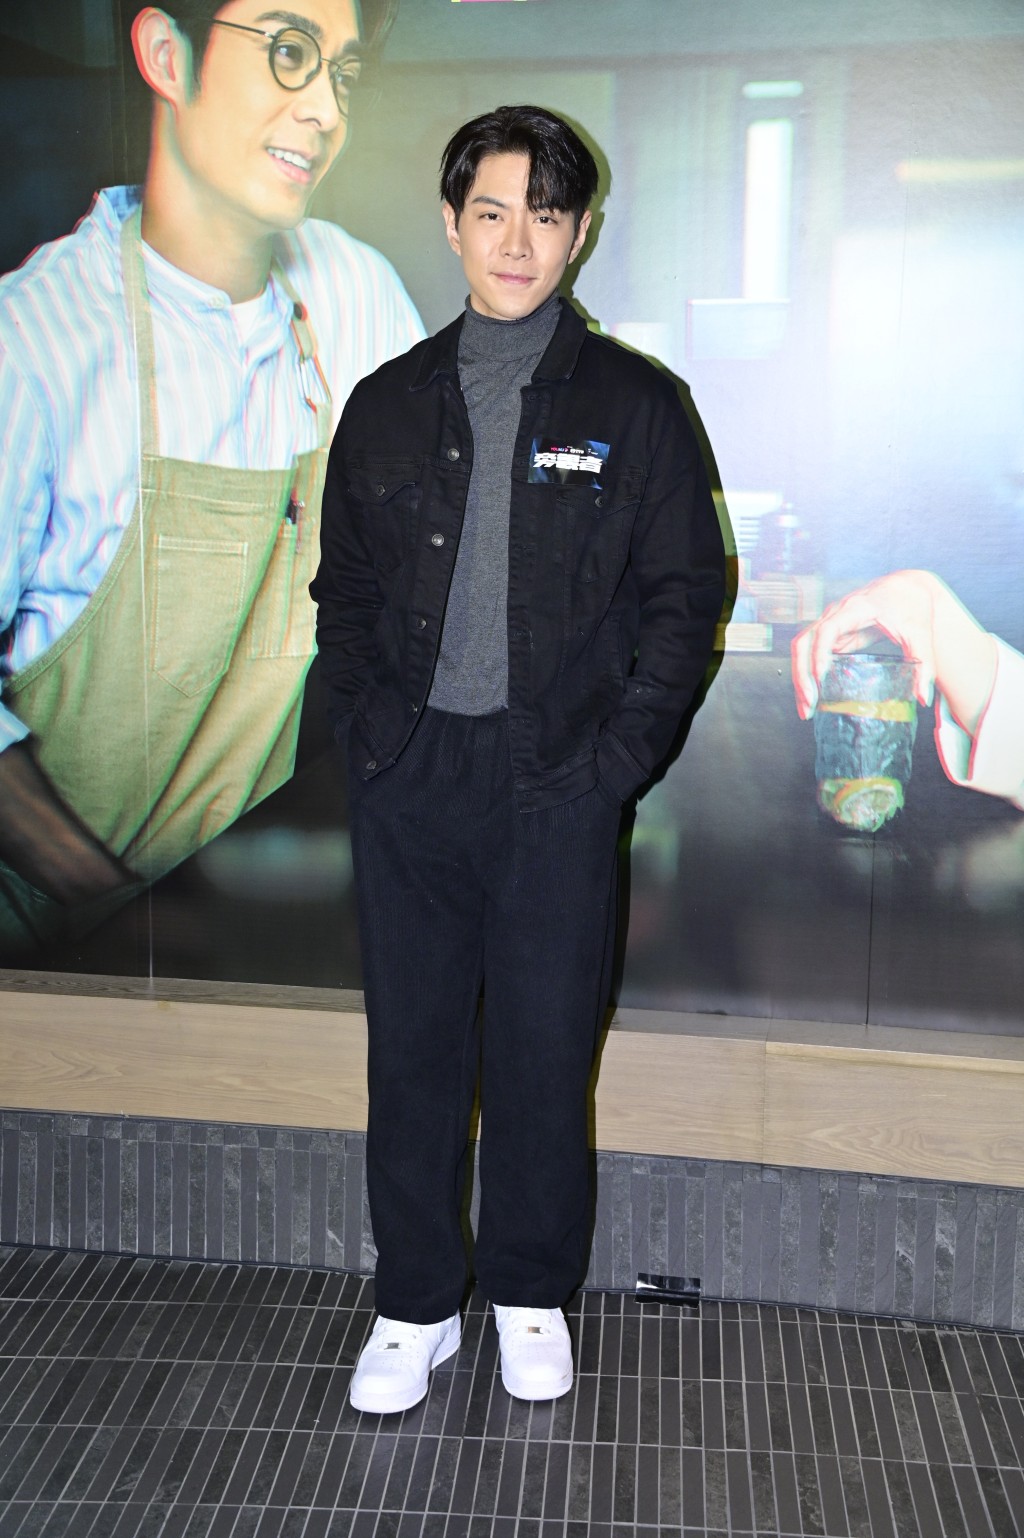 羅天宇透露將參與一套以ICAC作為題材的劇集之演出，該劇集合五位電影導演分別拍攝五個單元。